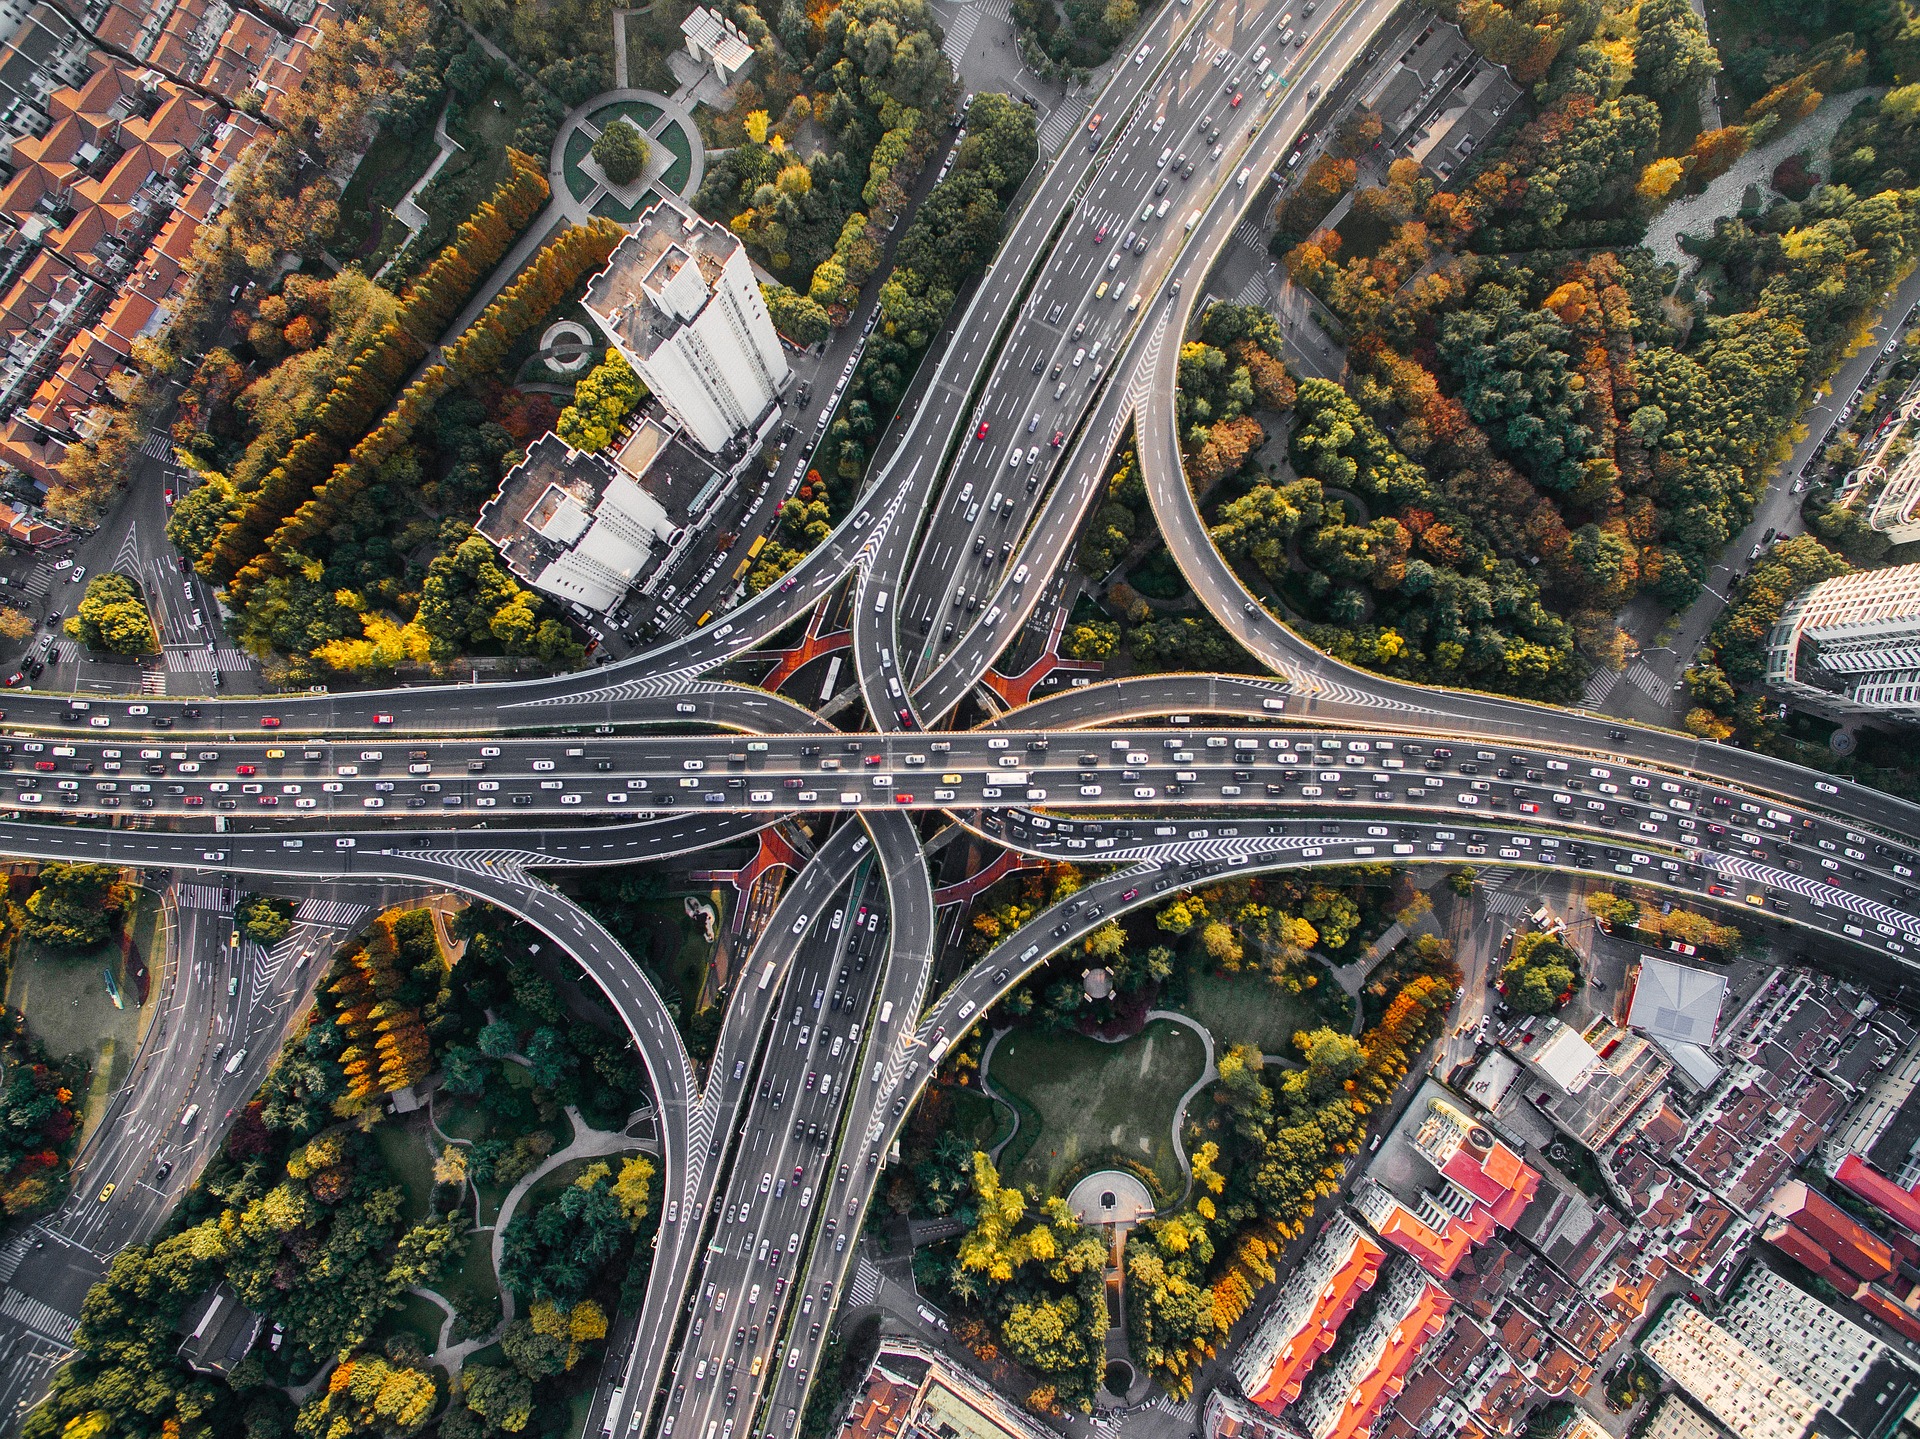 Transportation infrastructure. (Photo courtesy of Pixabay)